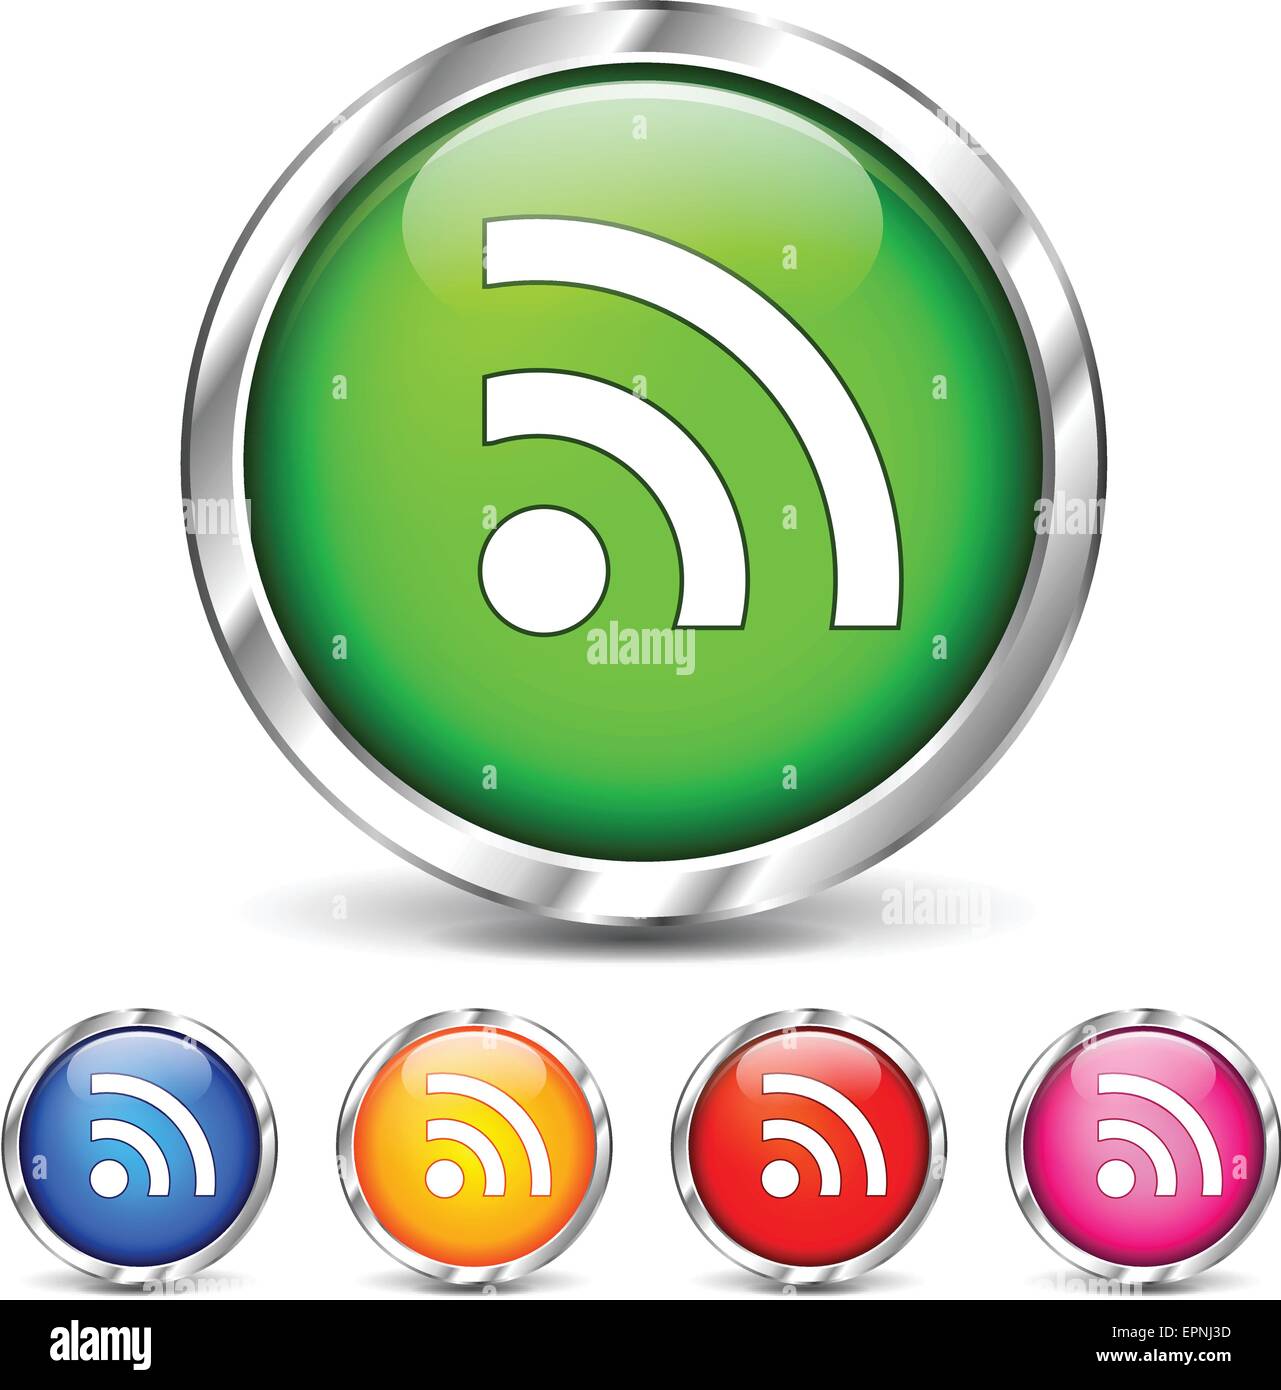 Illustration de la connexion Wi-Fi au réseau local icons set sur fond blanc Illustration de Vecteur